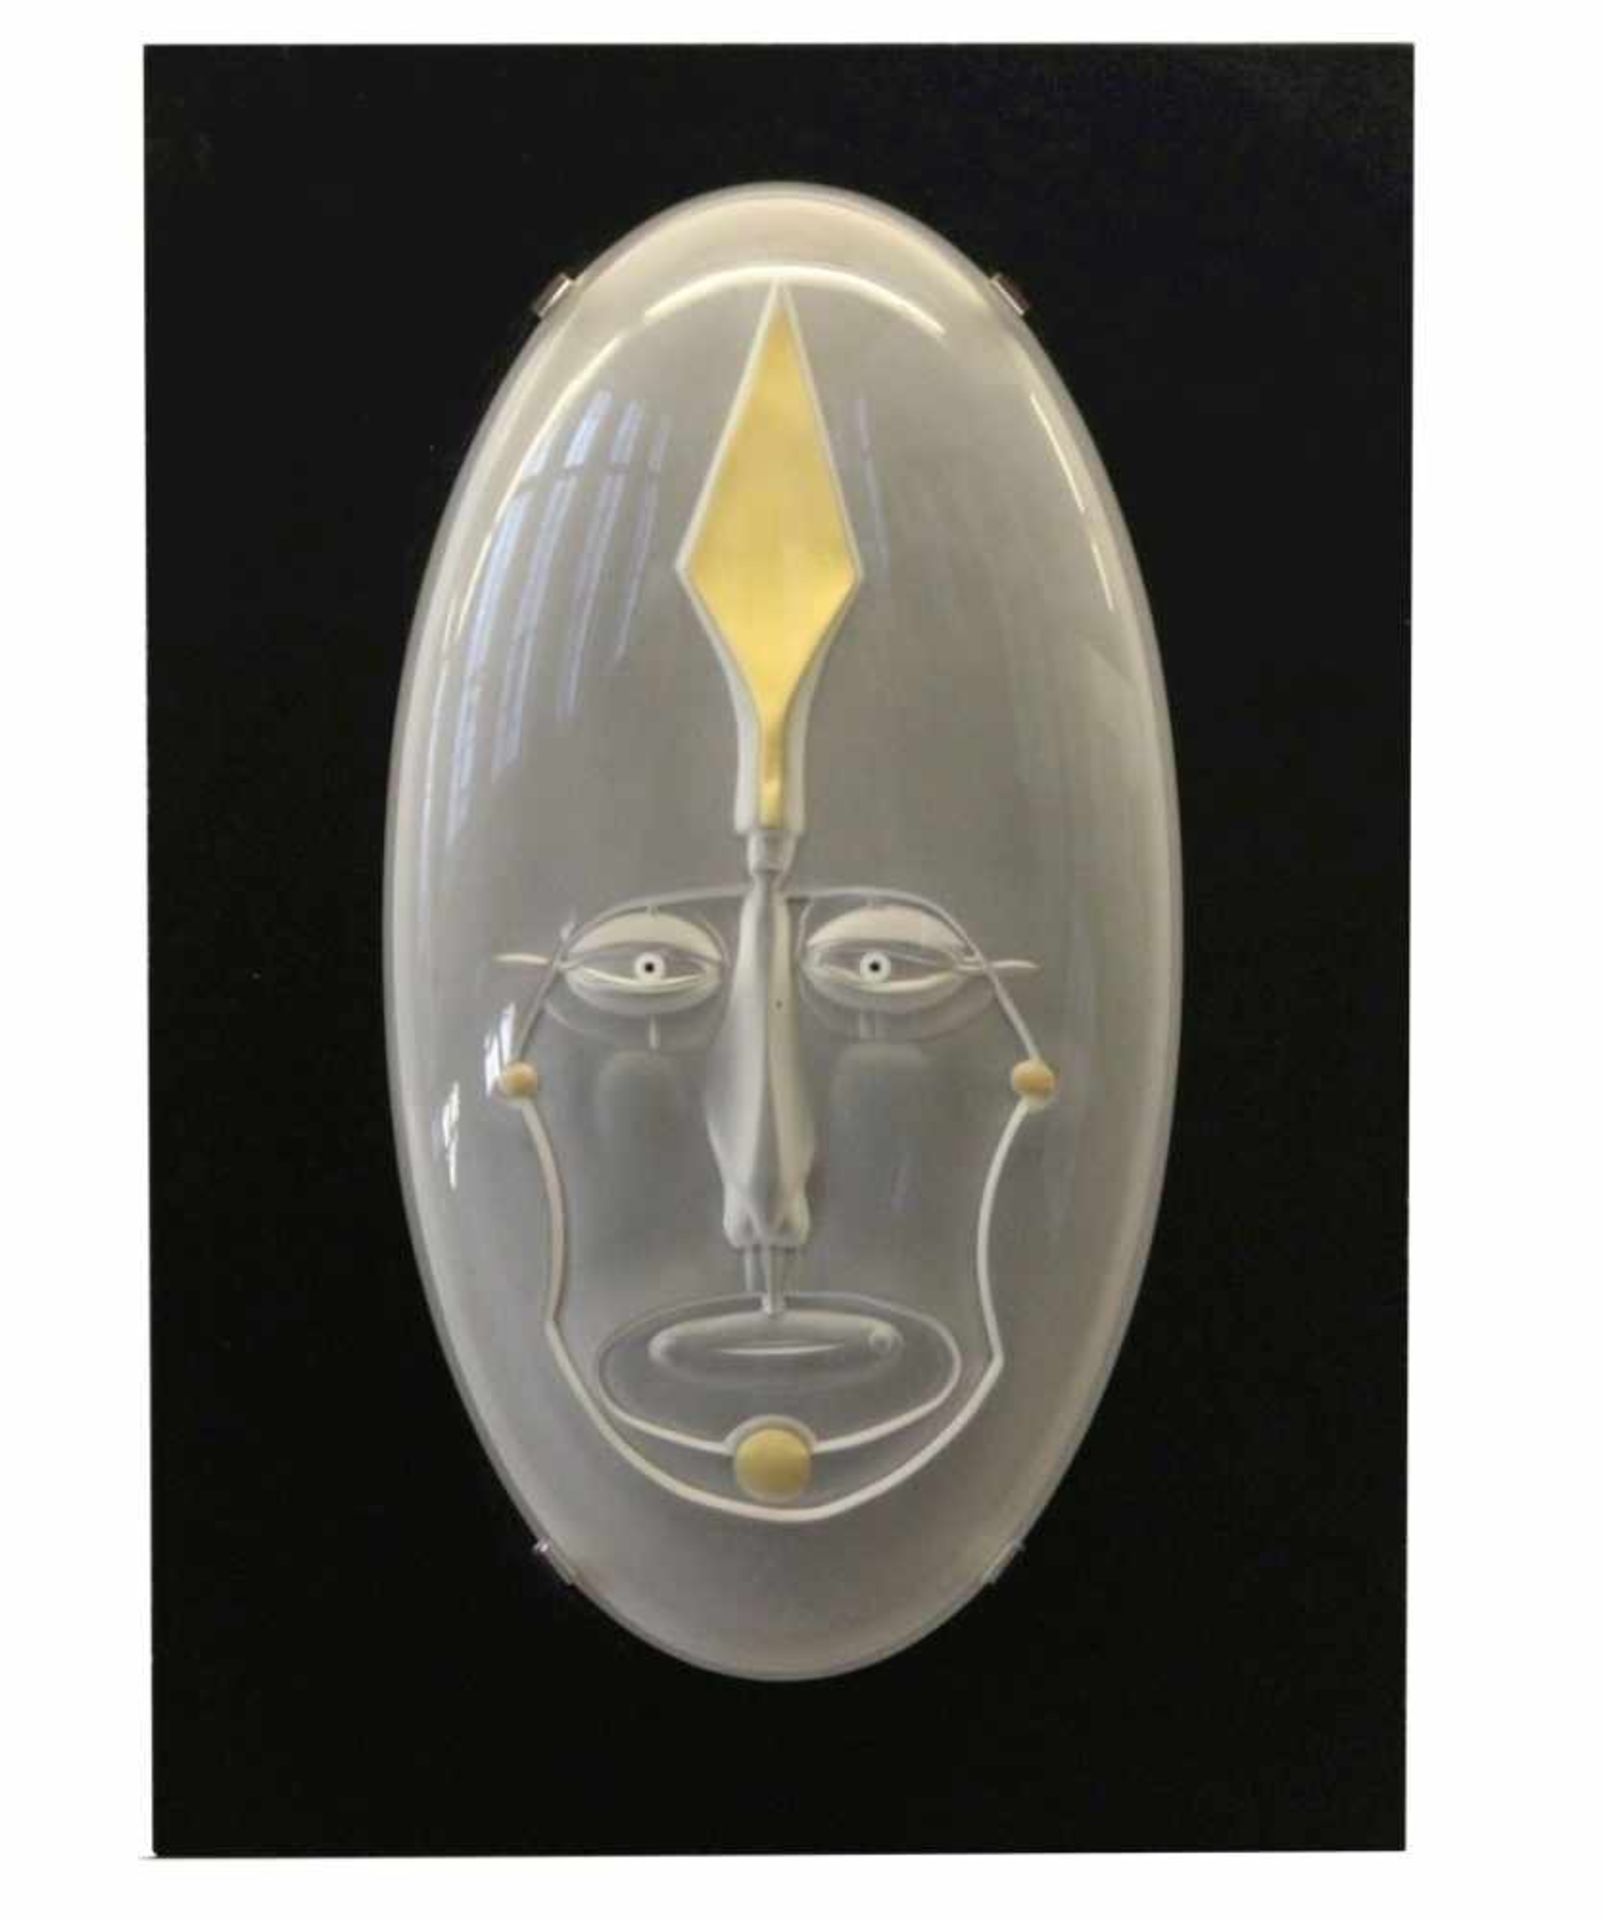 Glasskulptur - Paul Wunderlich (1927 Eberswalde - 2010 Saint-Pierre-de-Vassols) "Massai", Marke